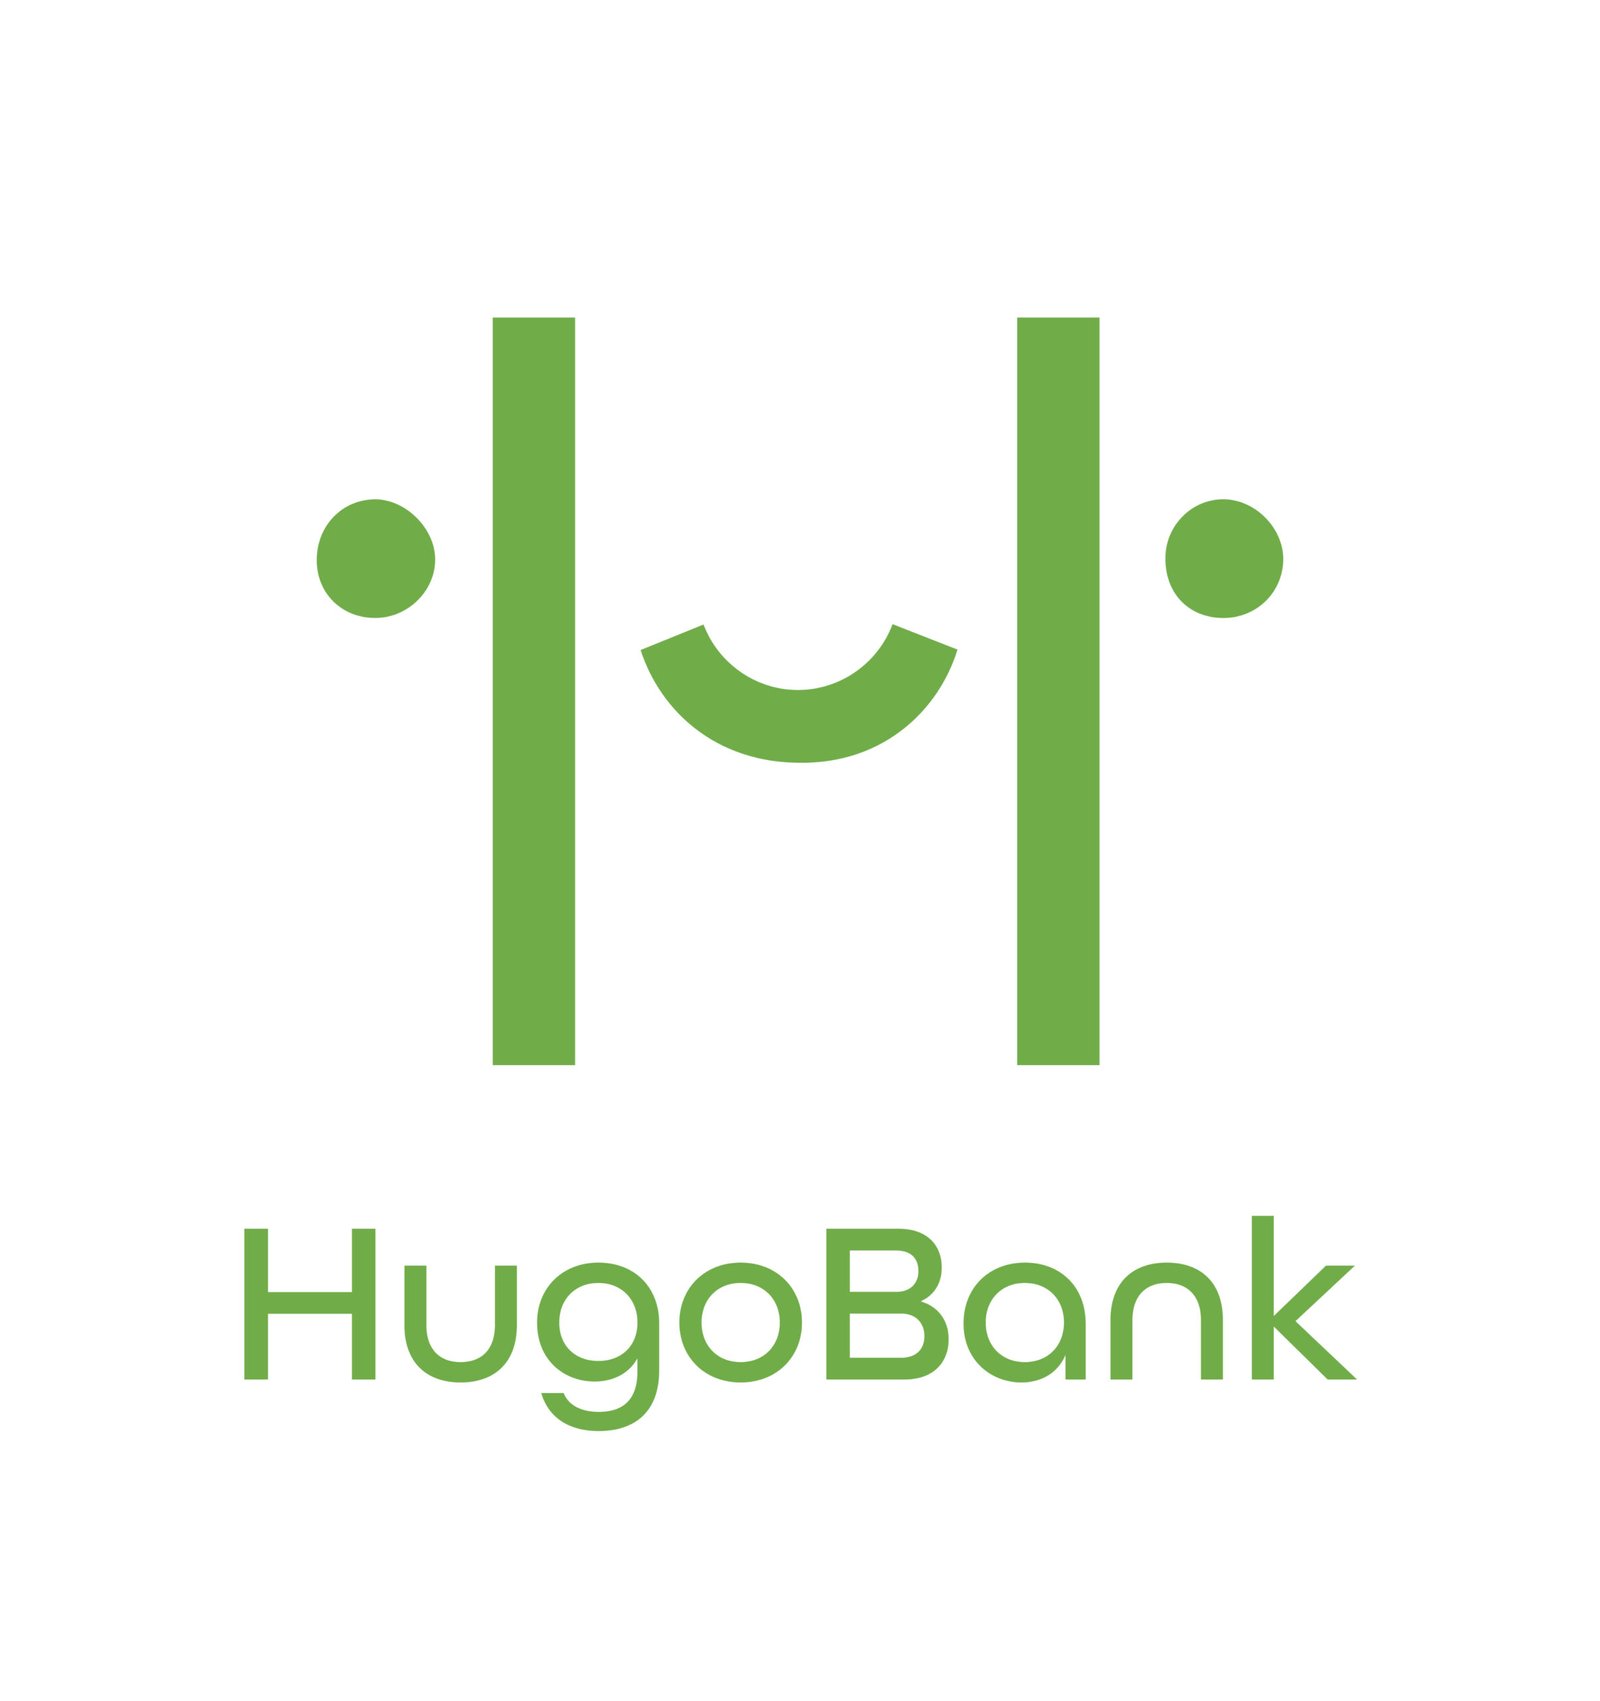 HugoBank Granted IPA Approval To Pioneer Digital Banking In Pakistan